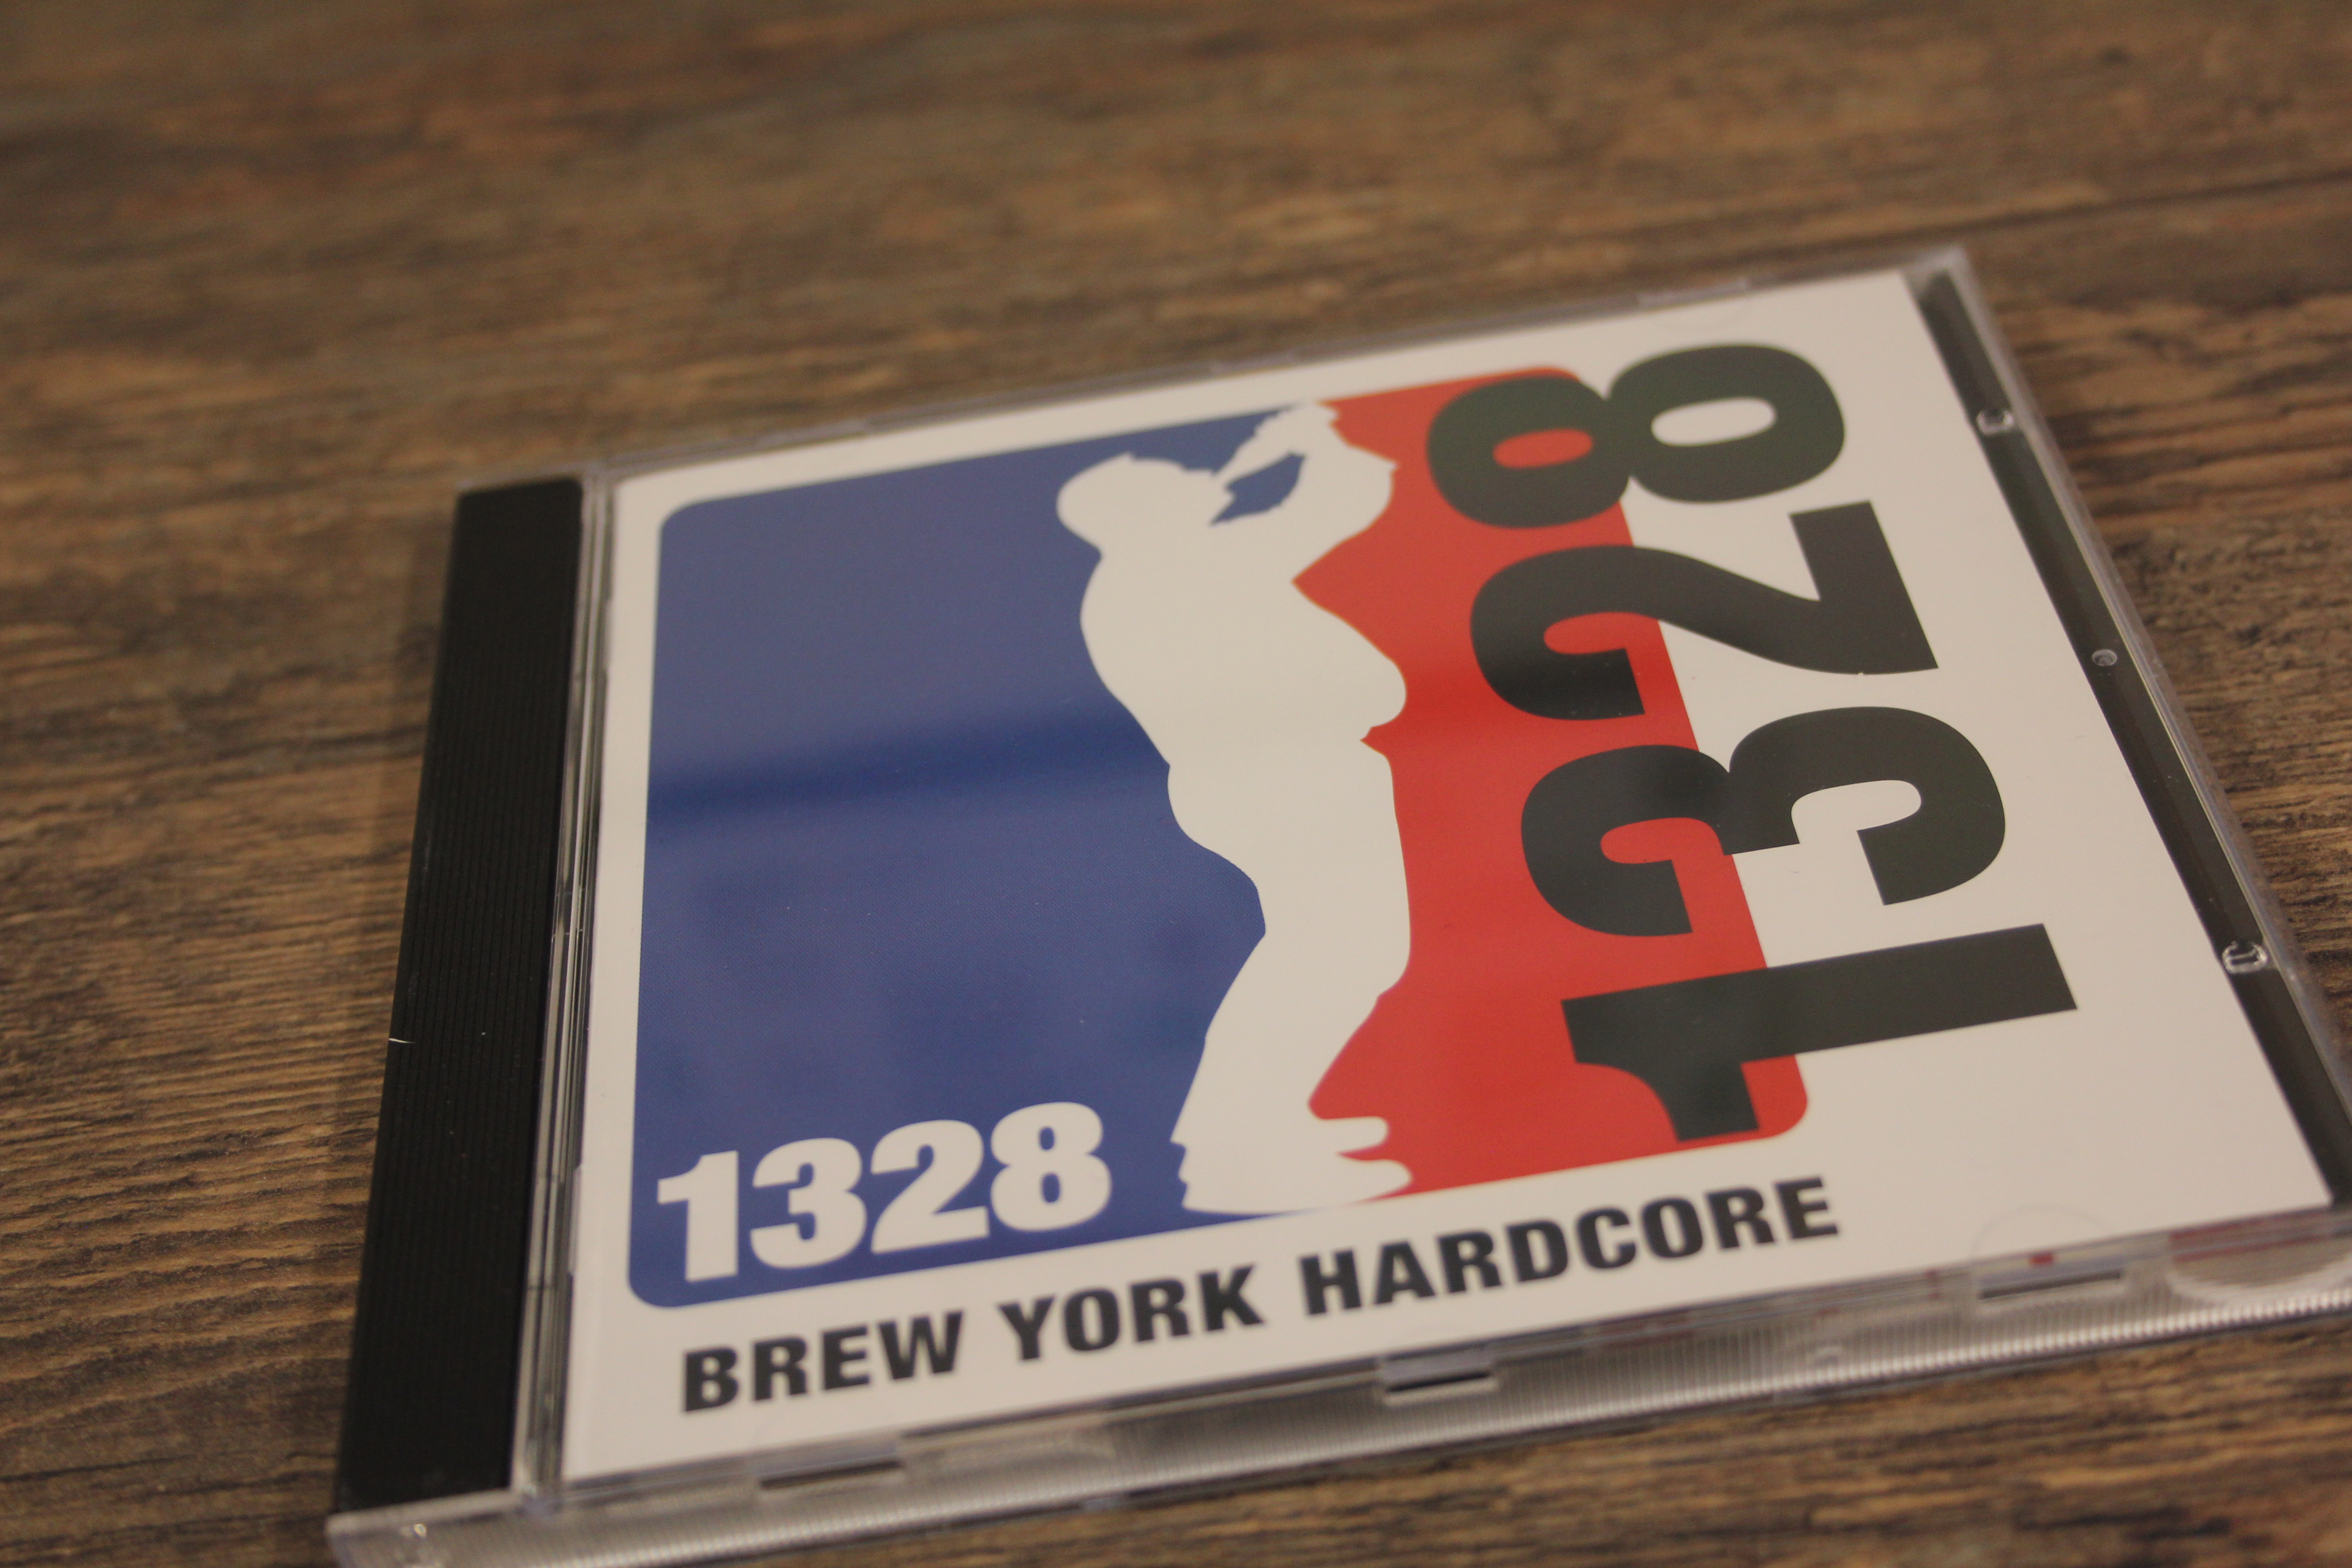 1328 - Brew York Hardcore